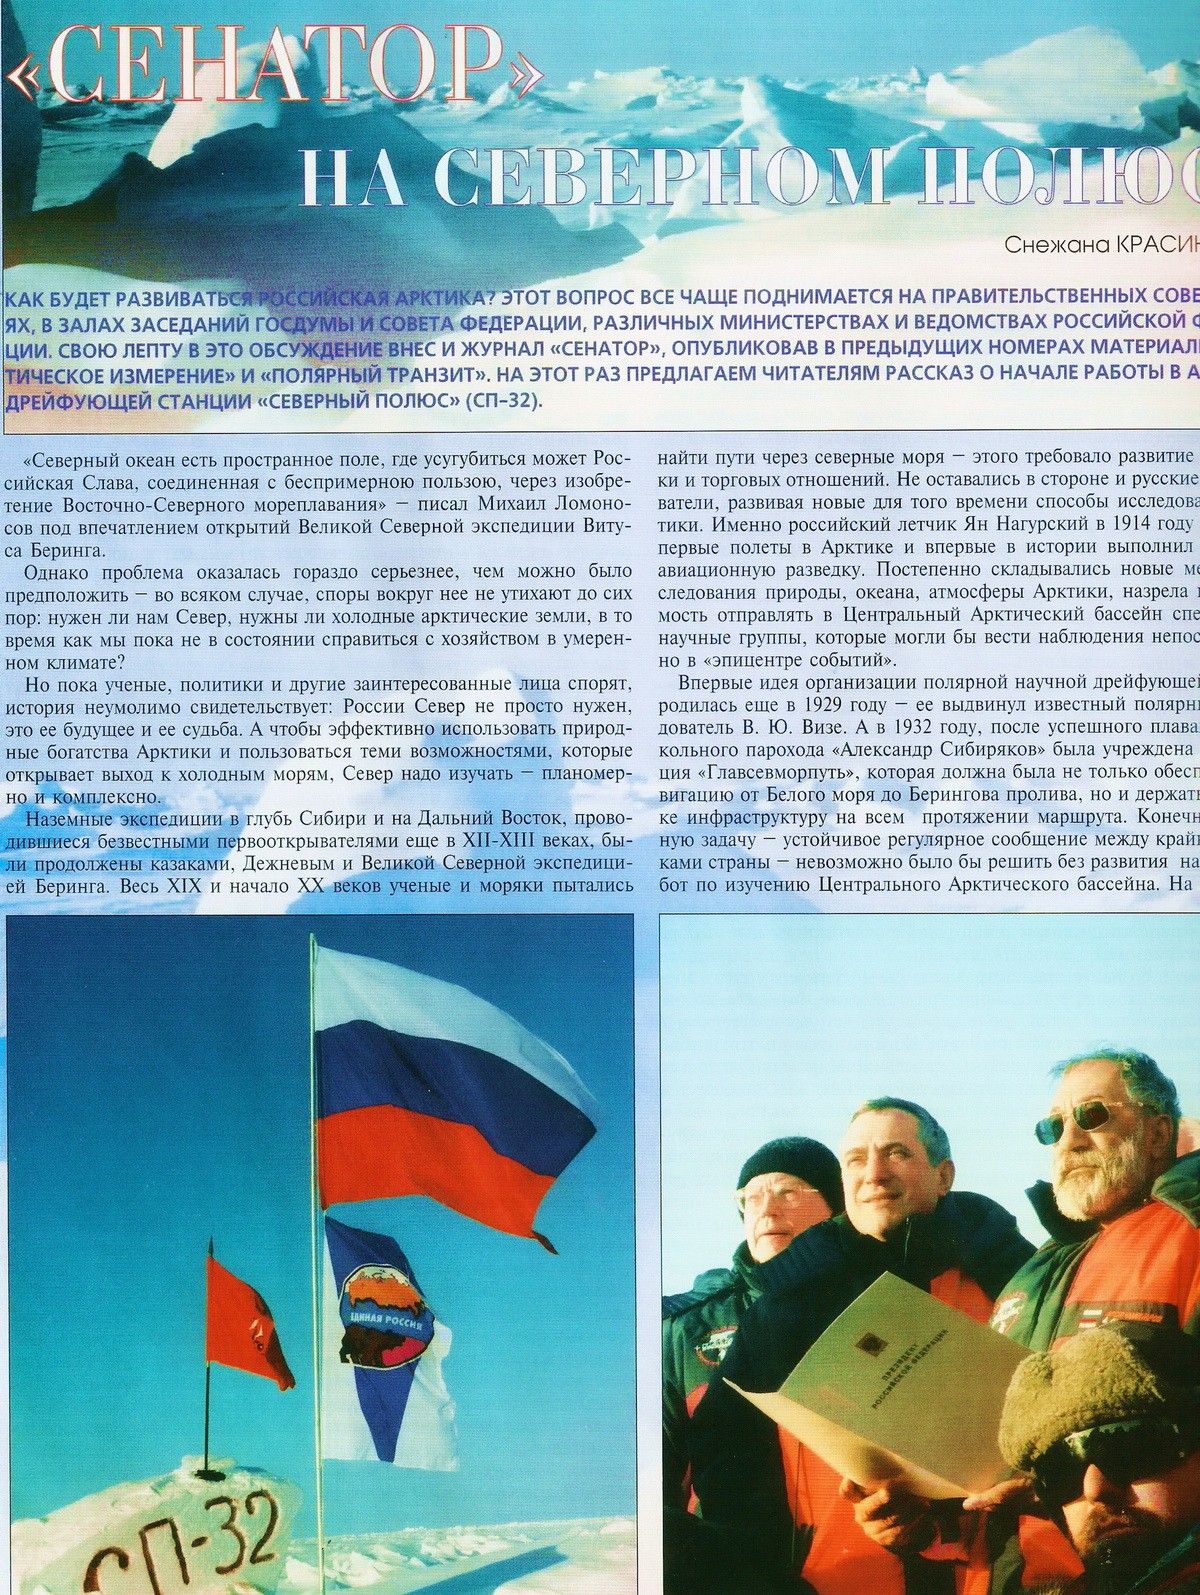 Журнал «СЕНАТОР», спецкору которого удалось присутствовать на этом историческом событии, тоже будет ждать вестей из района Северного Полюса.